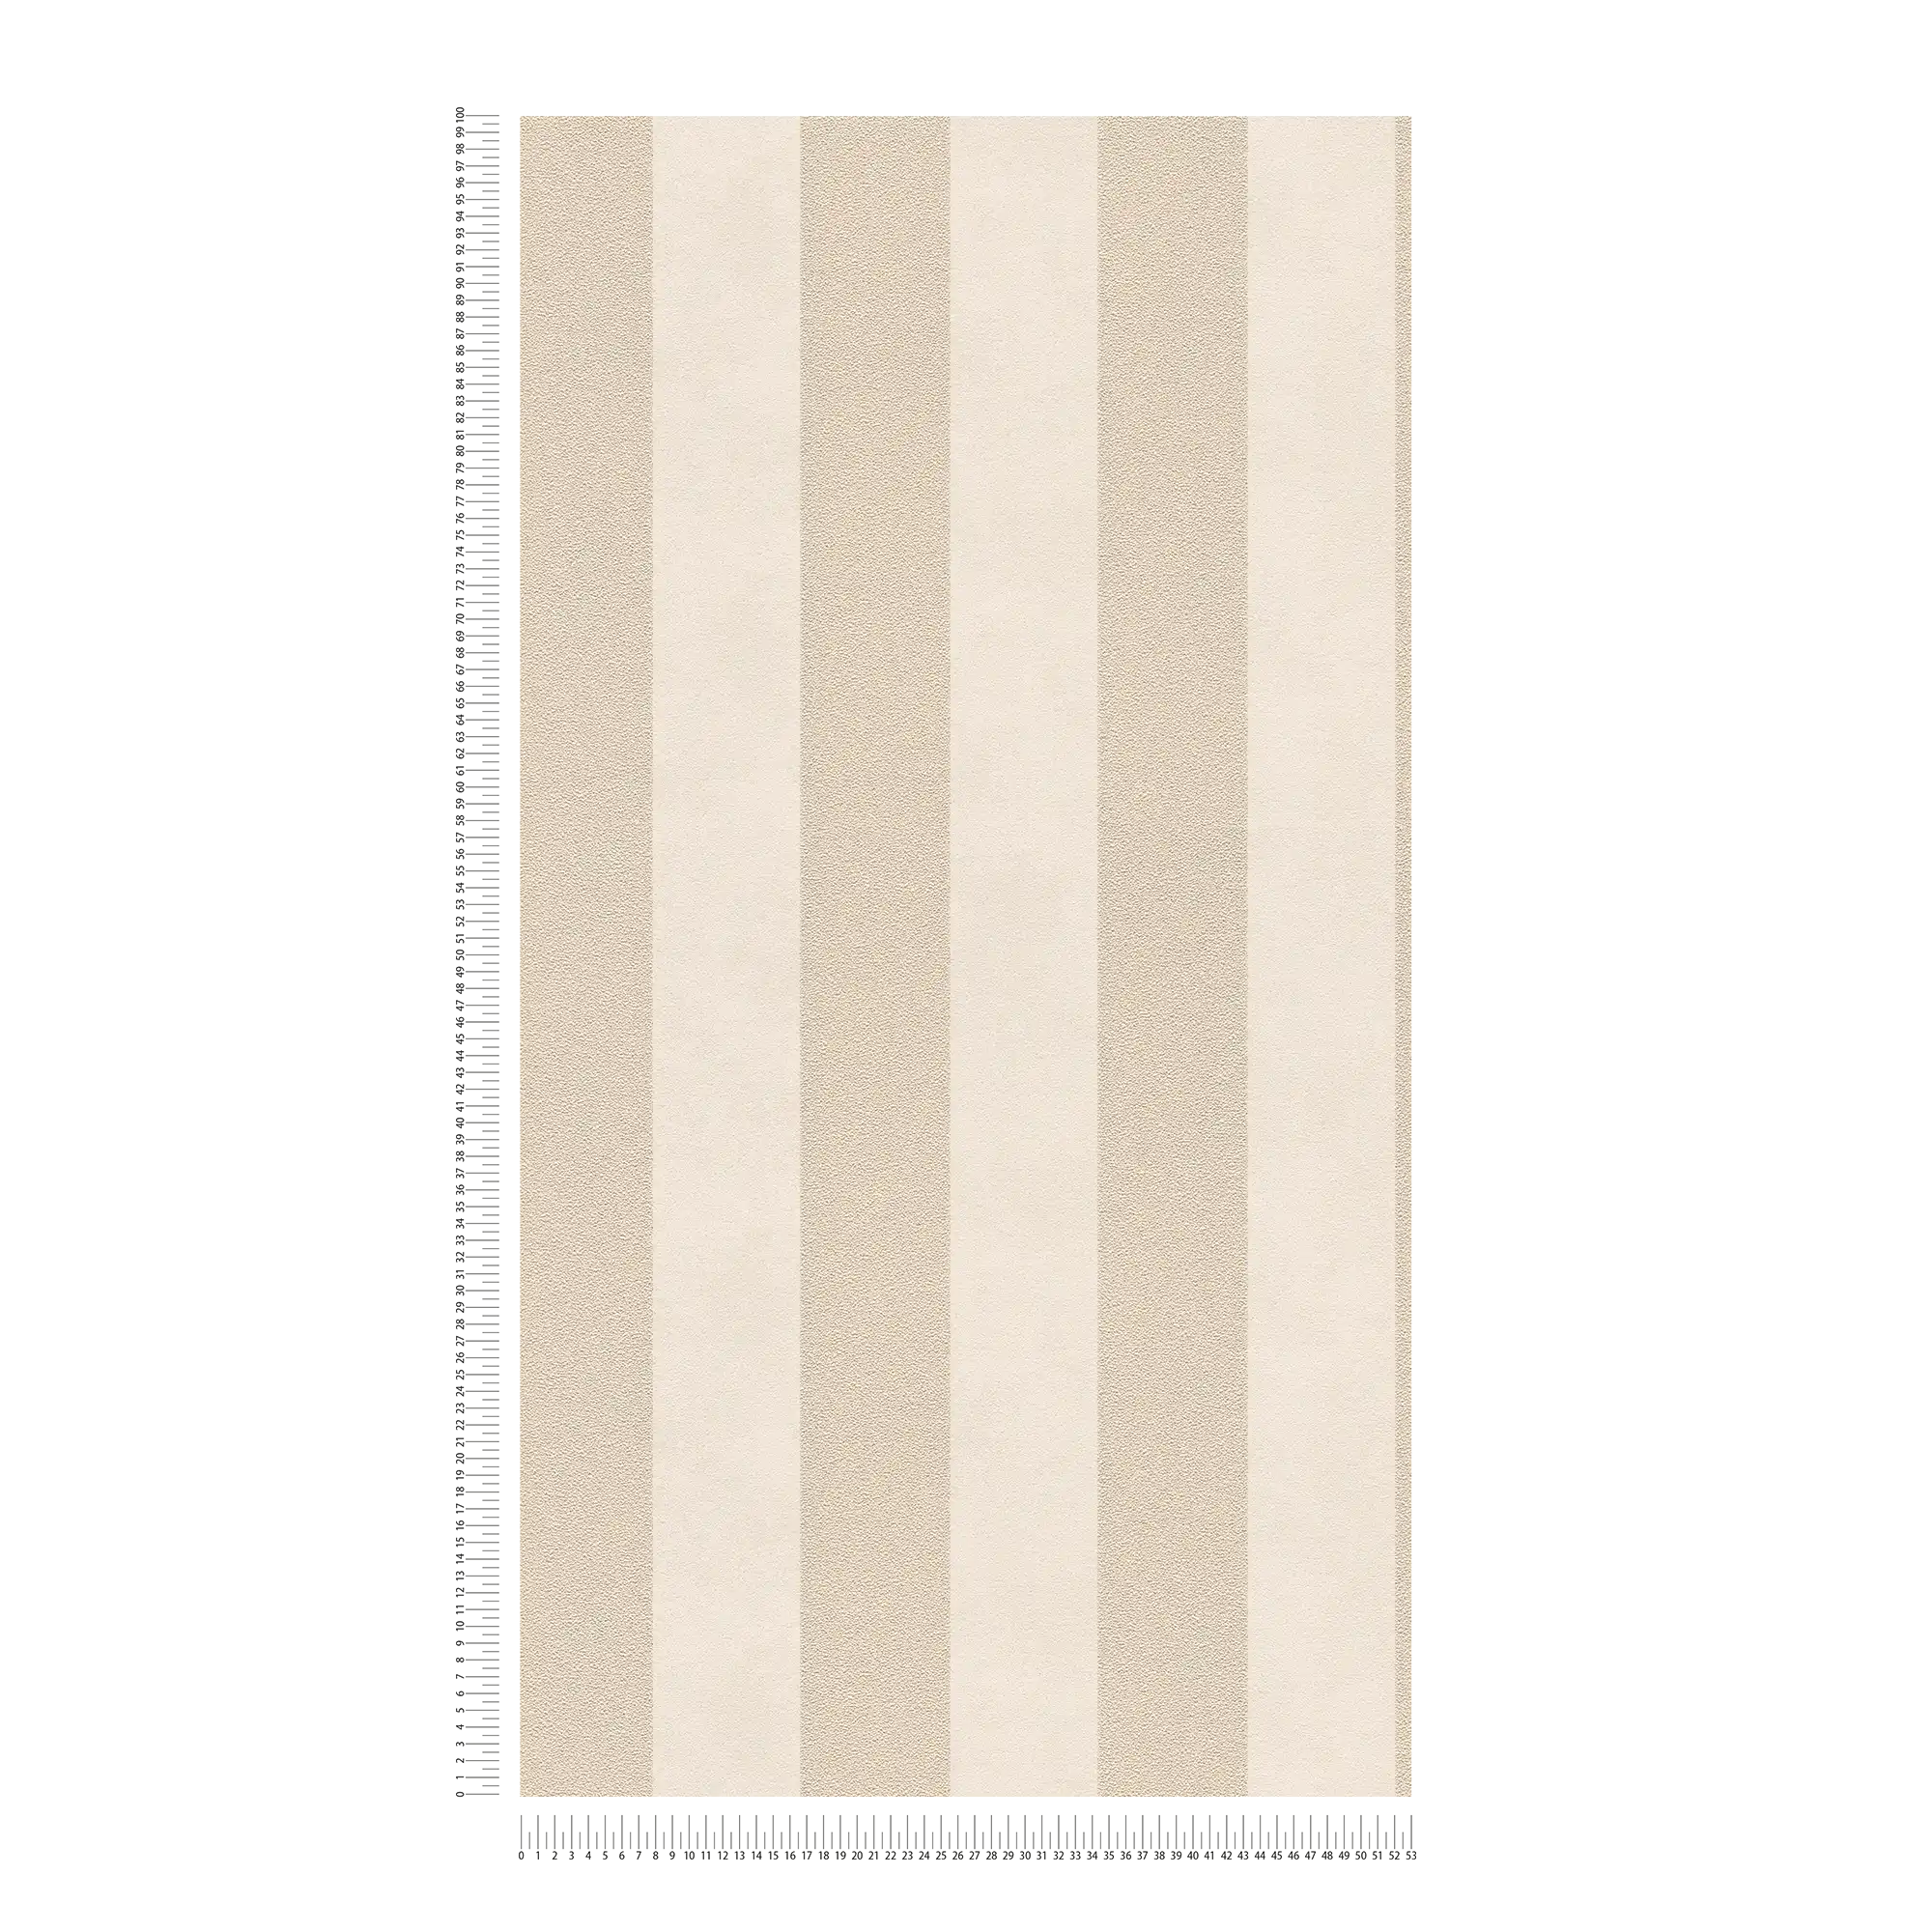             Papier peint à rayures en bloc avec motifs colorés et texturés - beige, or, crème
        